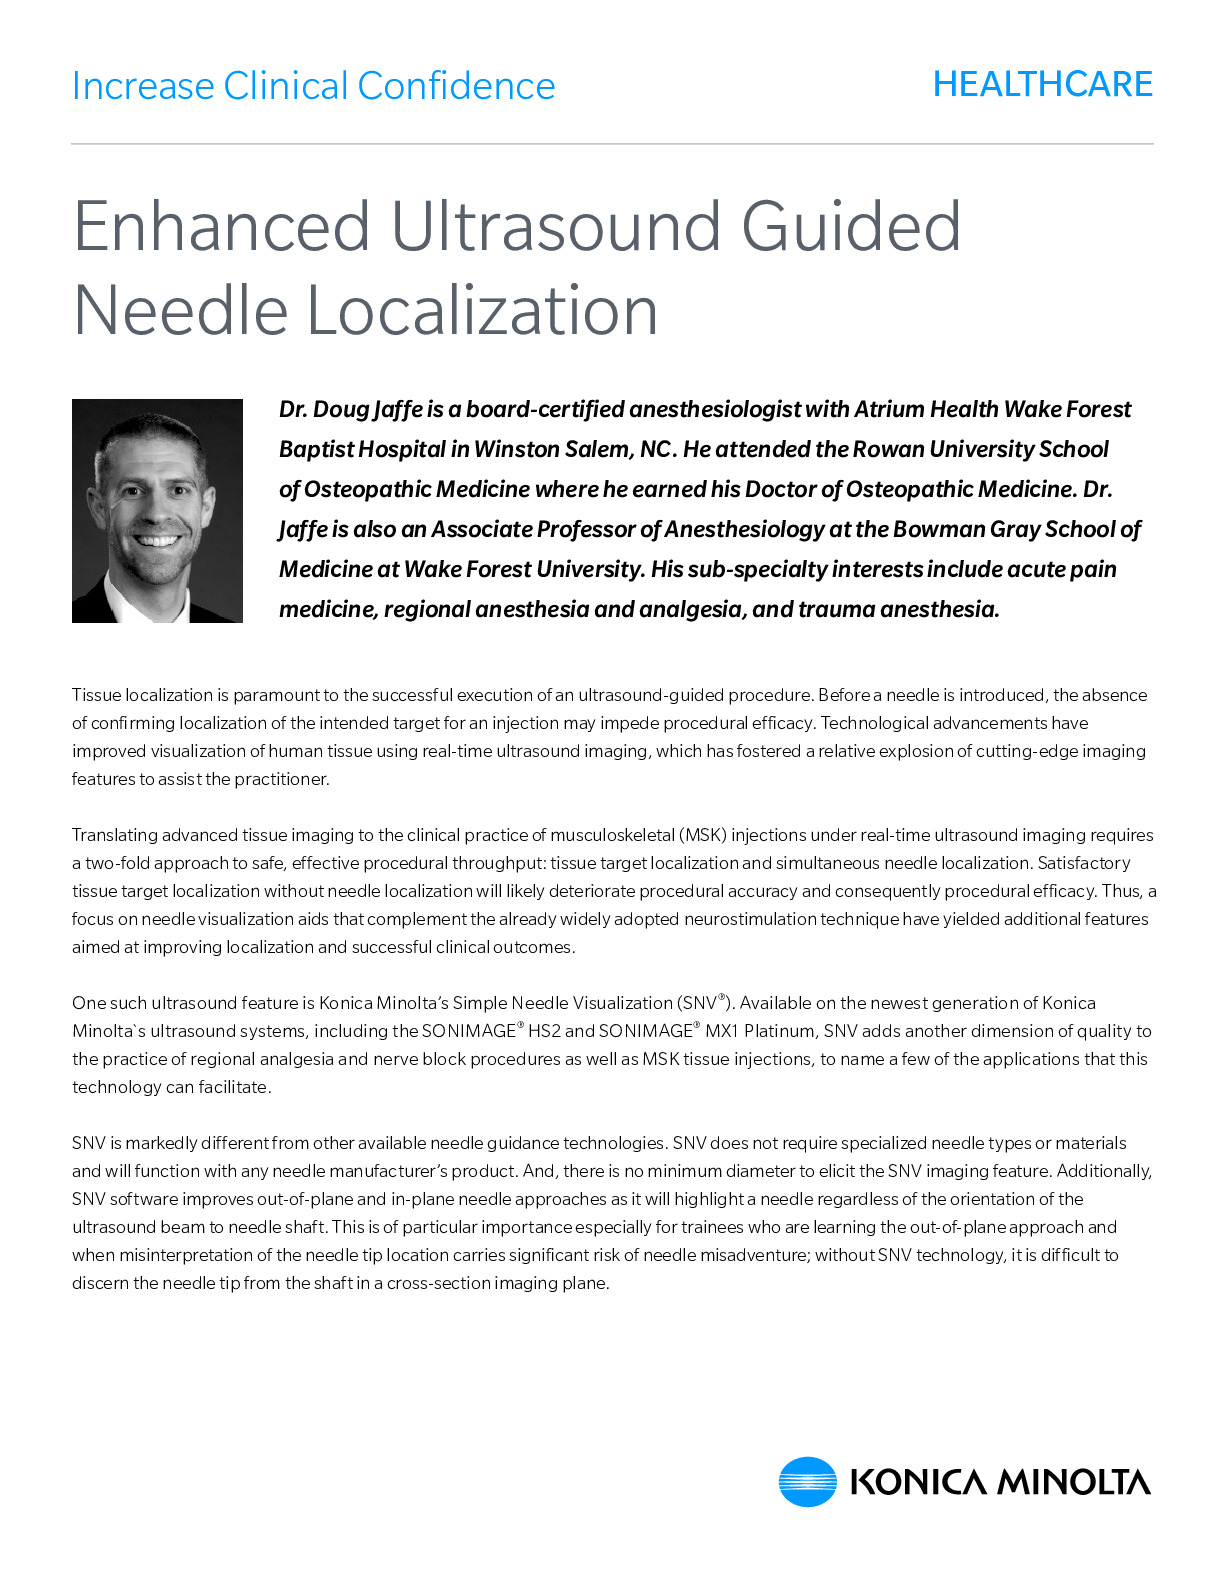 case study on ultrasound